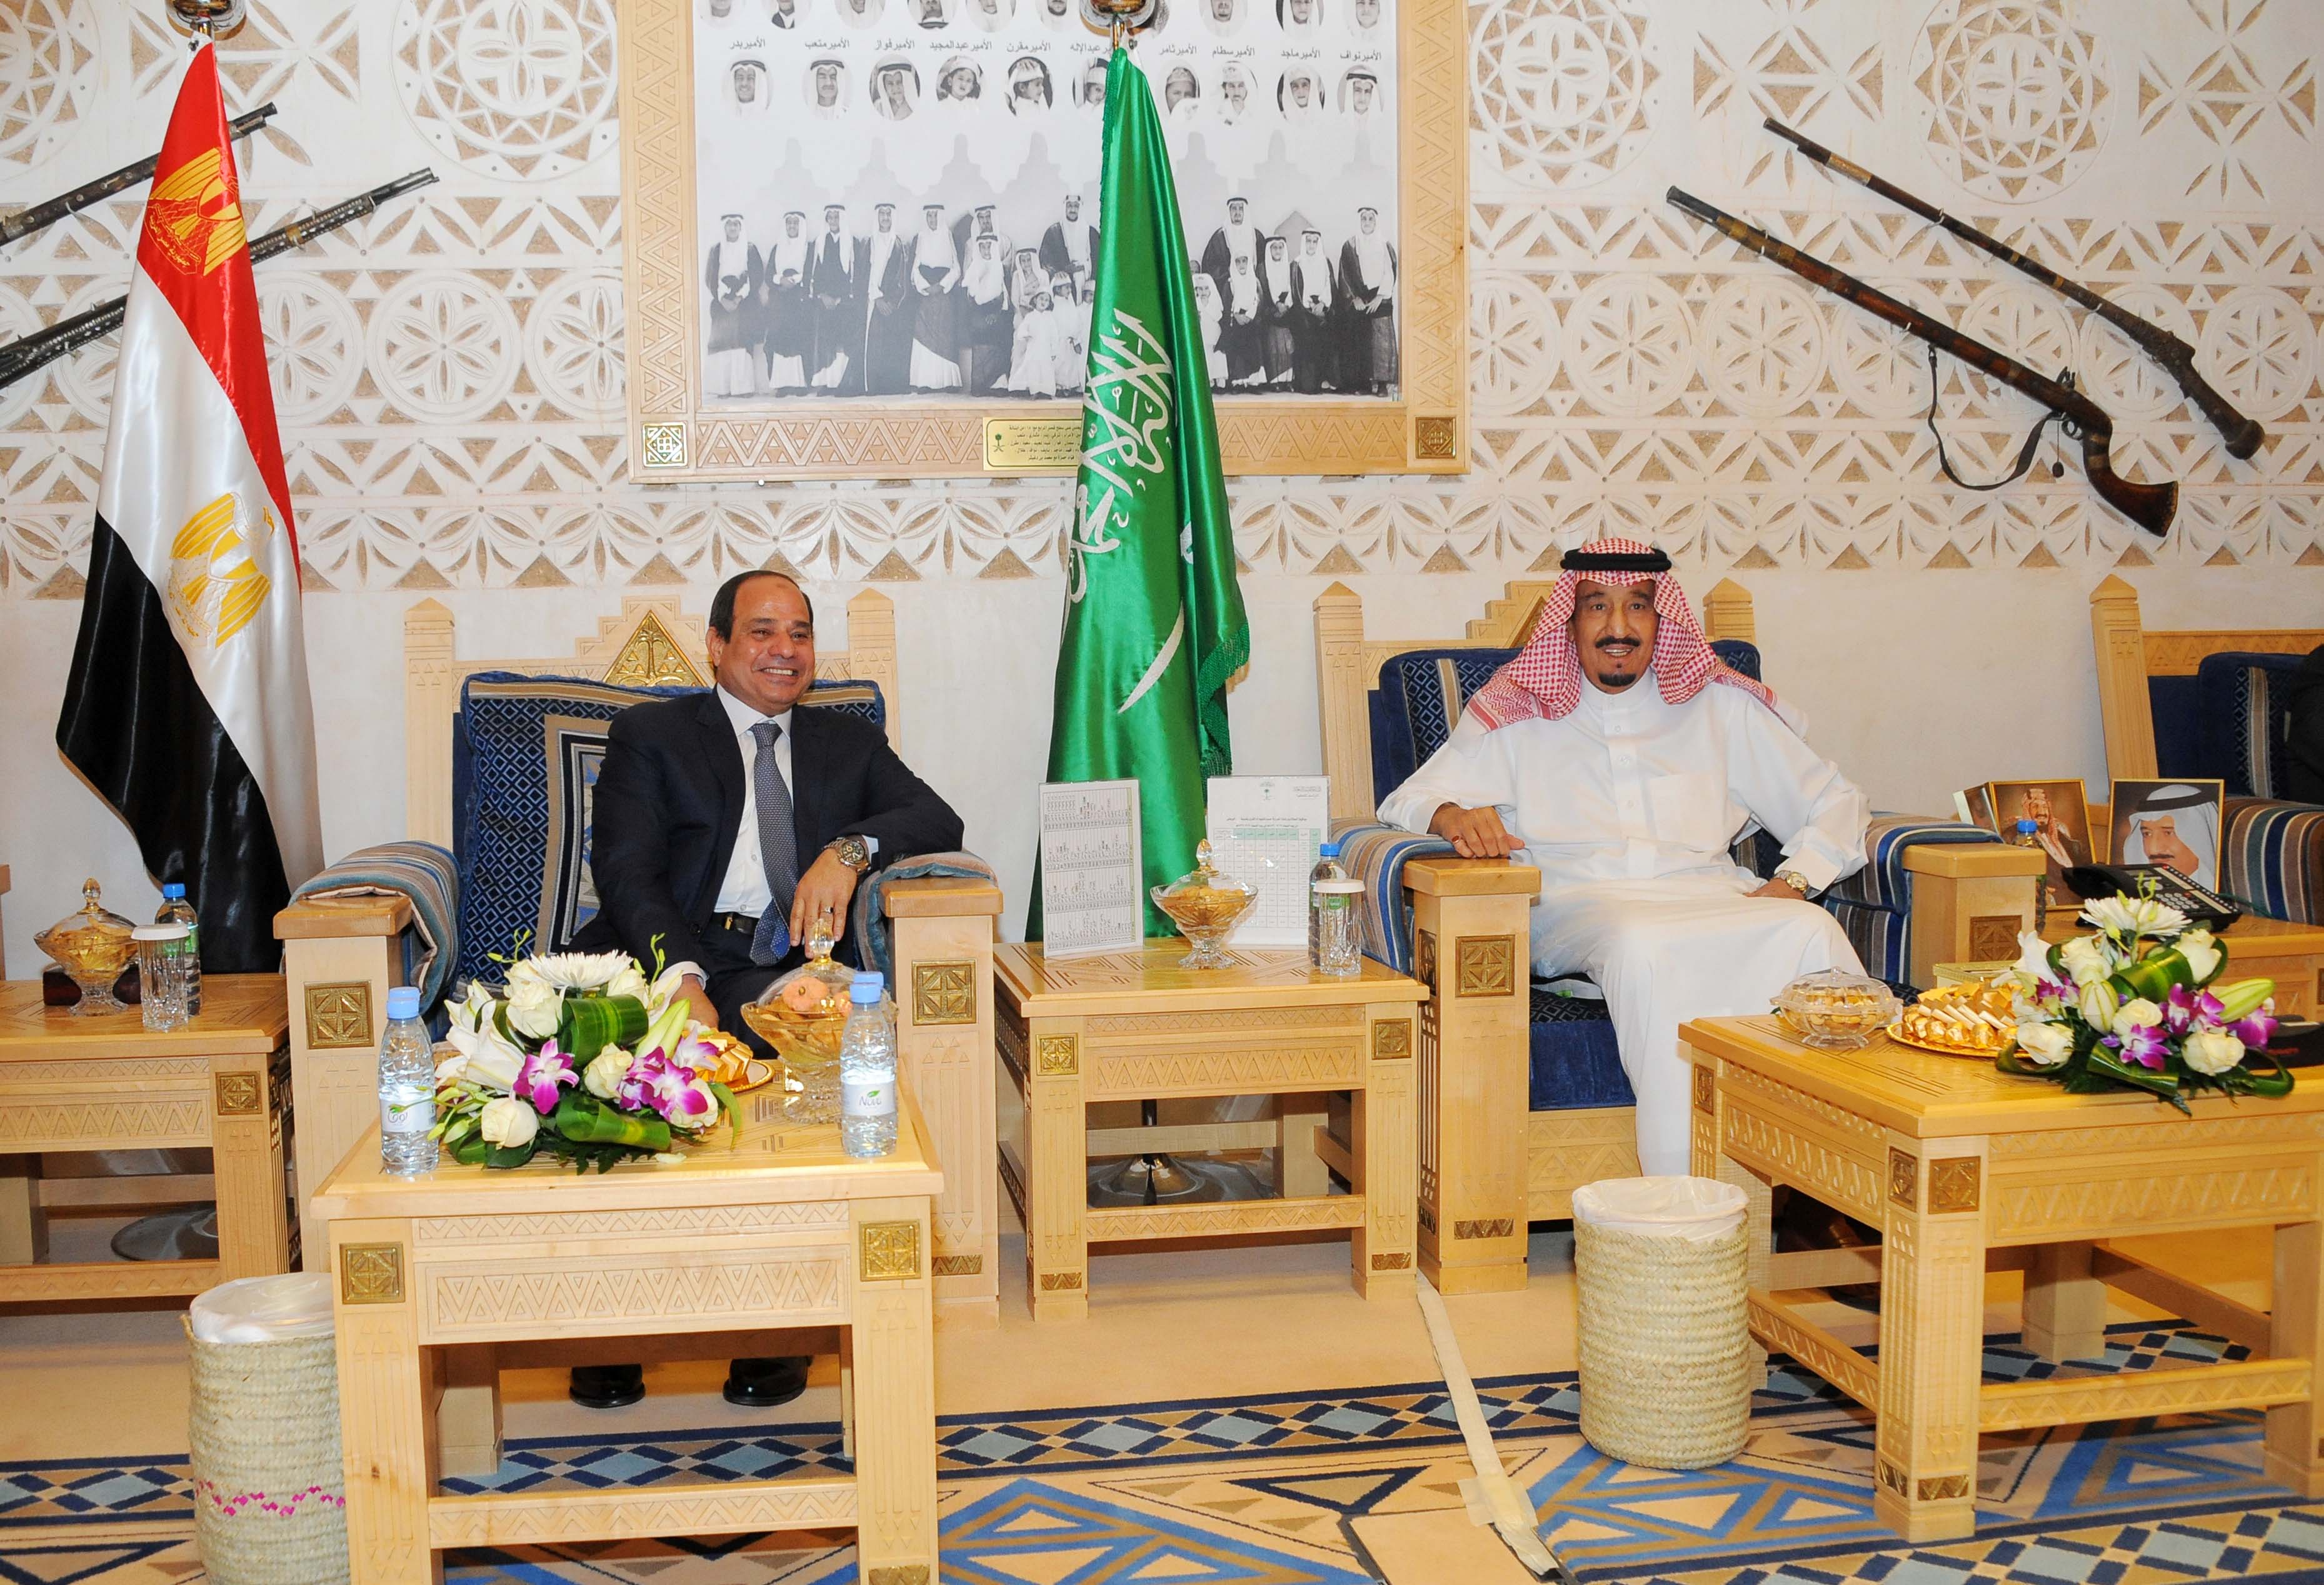 Sisi makes short visit to Saudi Arabia